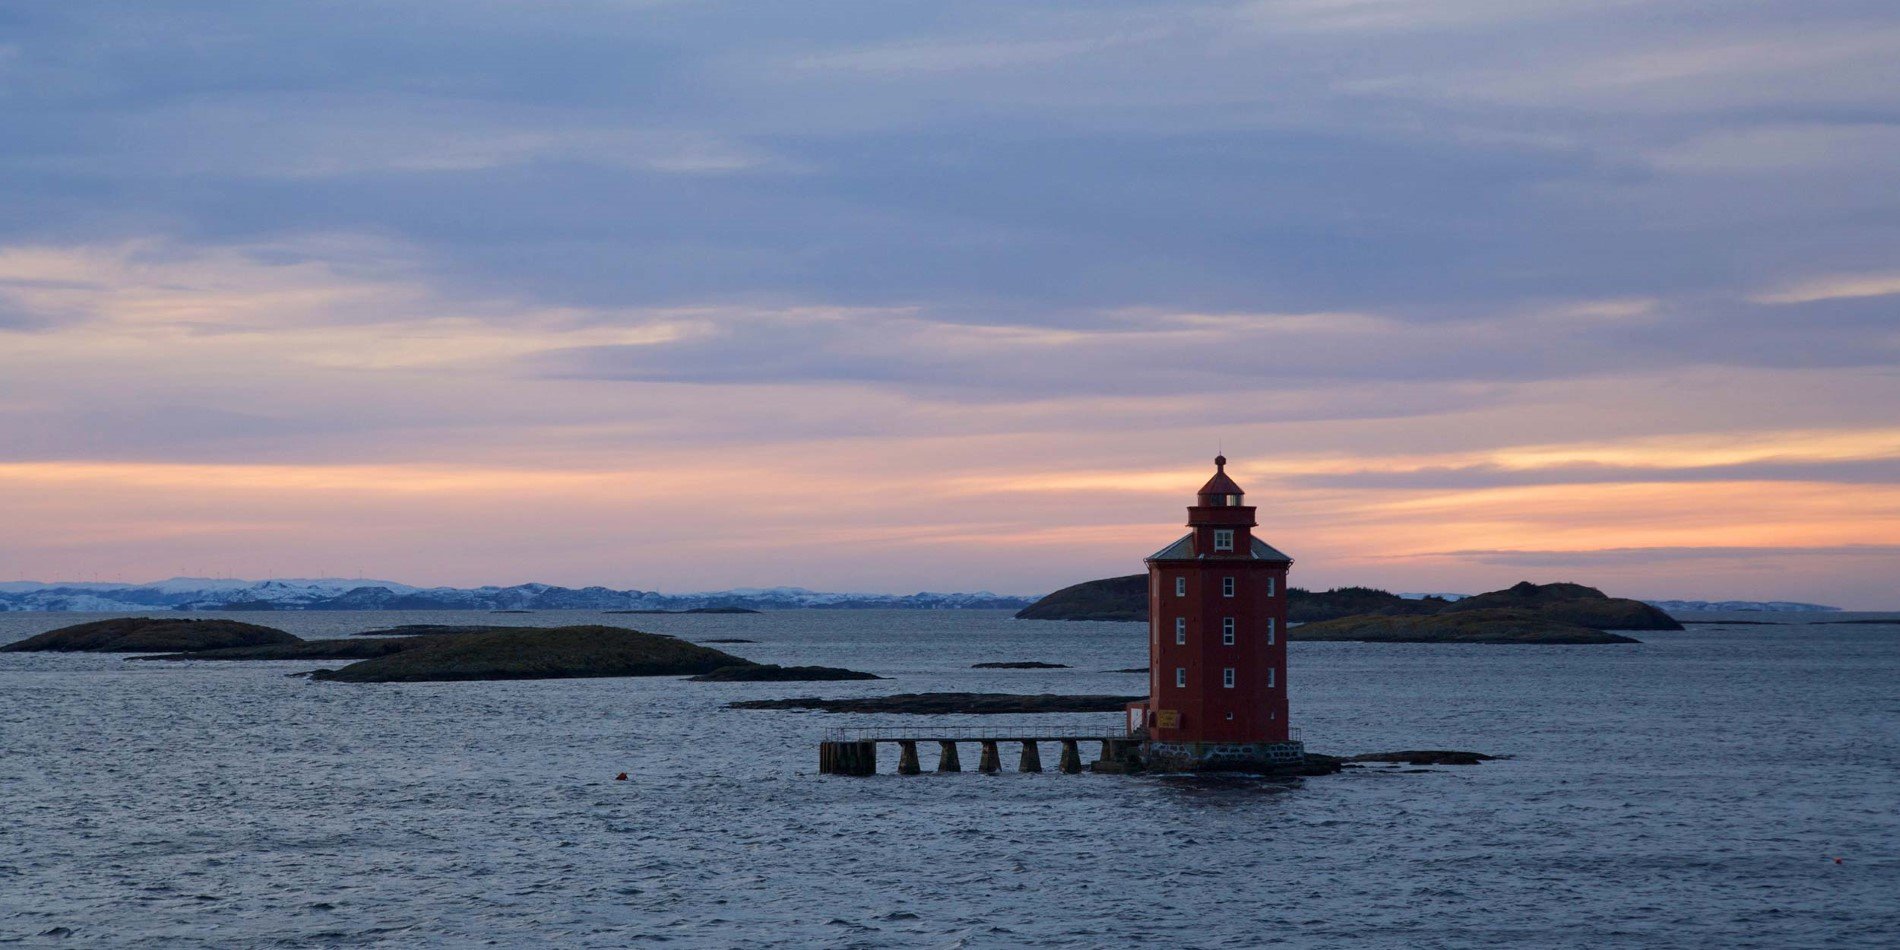 Kjeungskjær Lighthouse in the evening